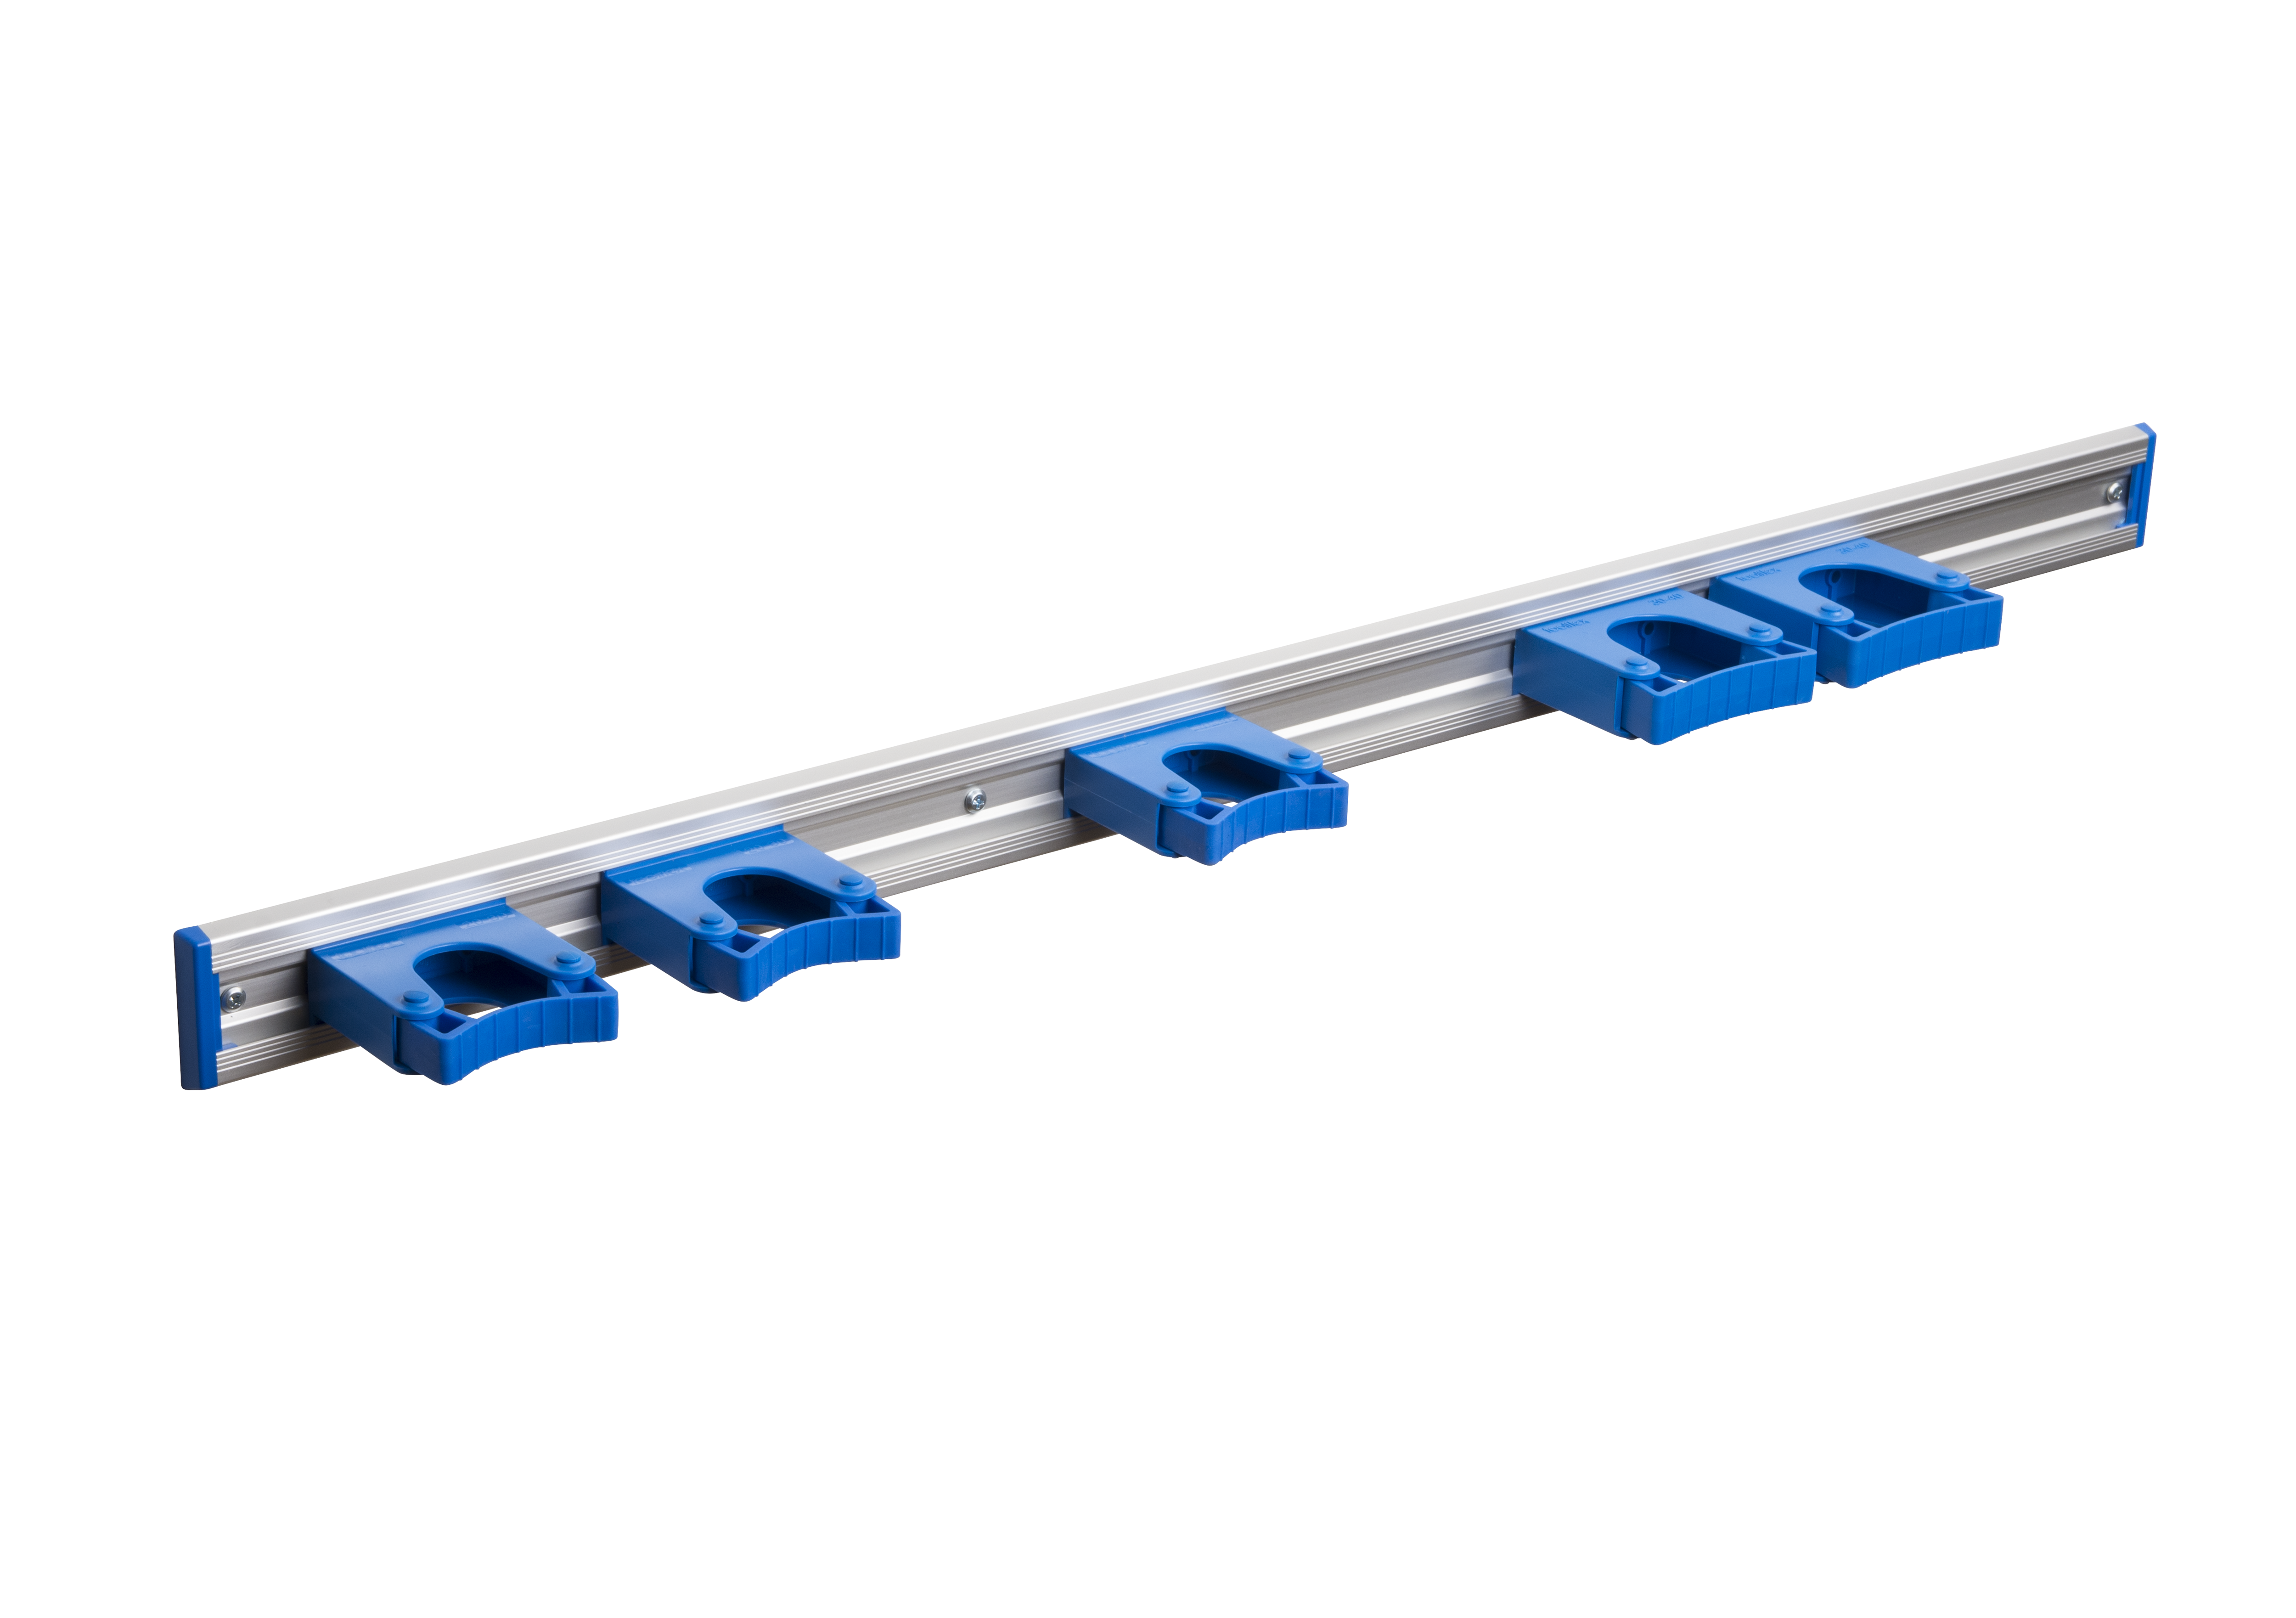 Toolflex Alu-Schiene 90 cm mit blauen Endstücken, bestückt mit 3 Halter 20-30mm und 2 Haltern 30-40 mm in blau